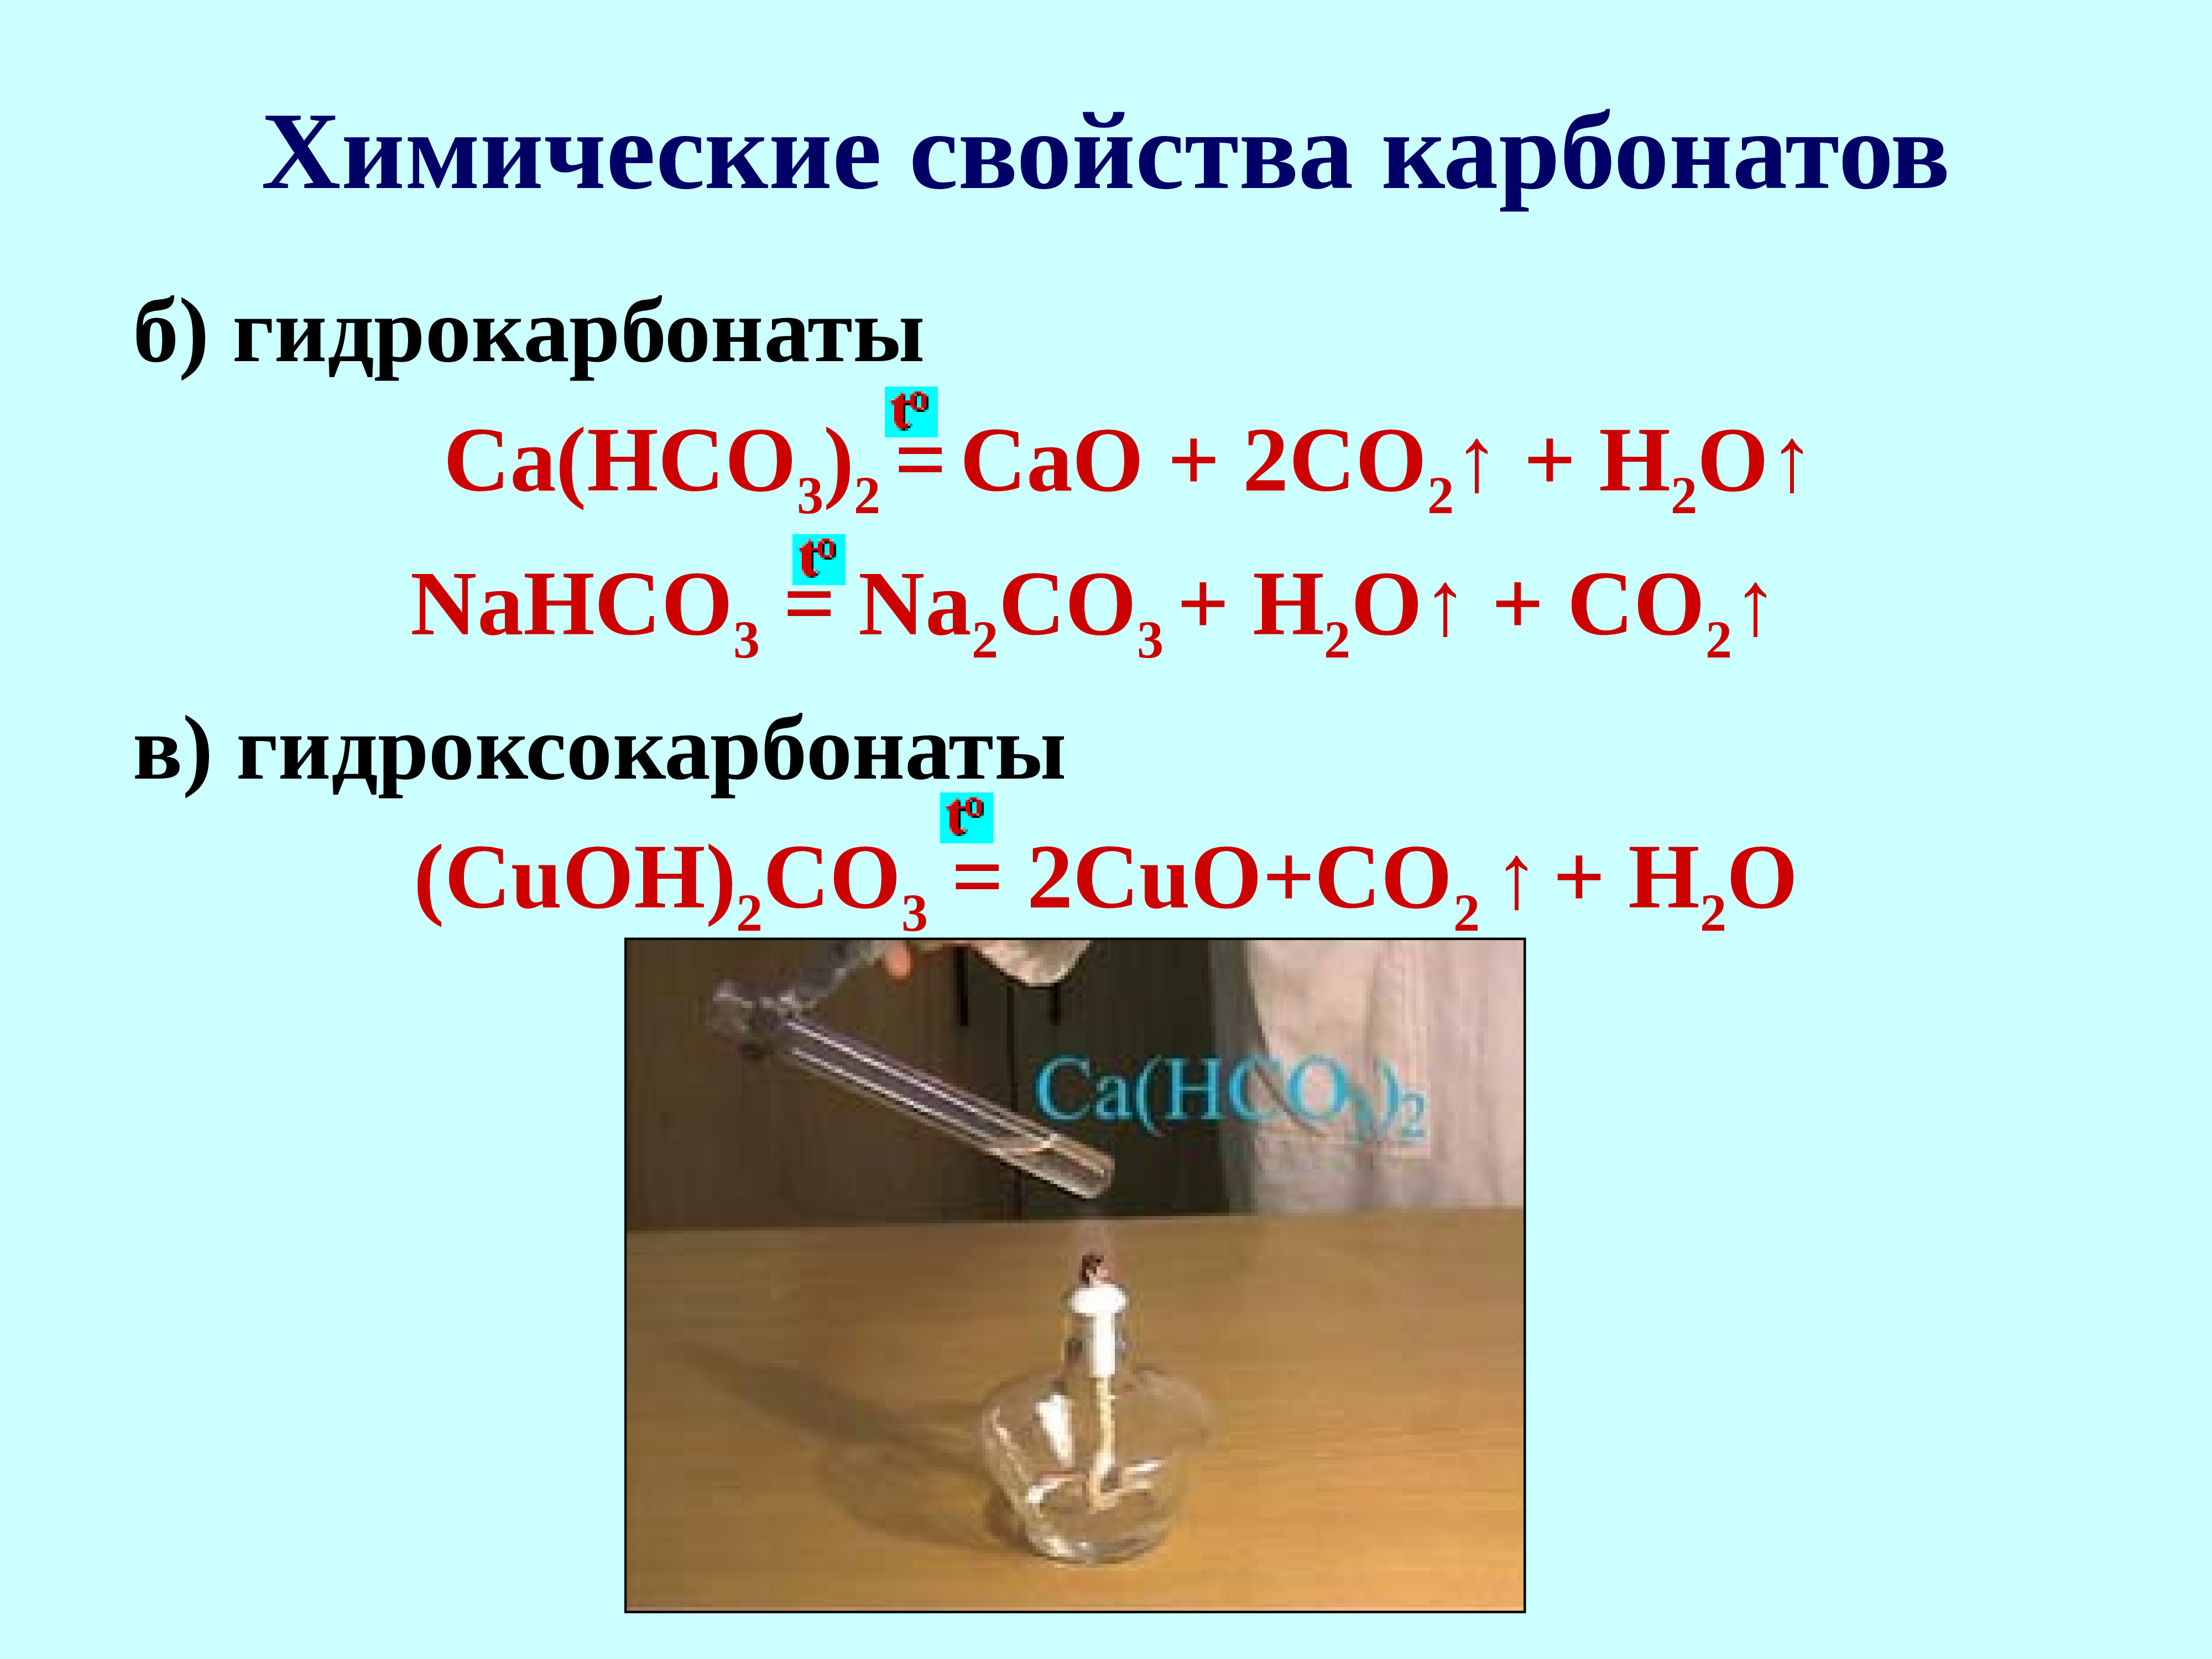 Гидрокарбонат натрия гидроксид меди 2. Co2 + карбонат = гидрокарбонат. Химические свойства карбонатов. Получение карбонатов и гидрокарбонатов. Гидроксокарбонат меди(II).